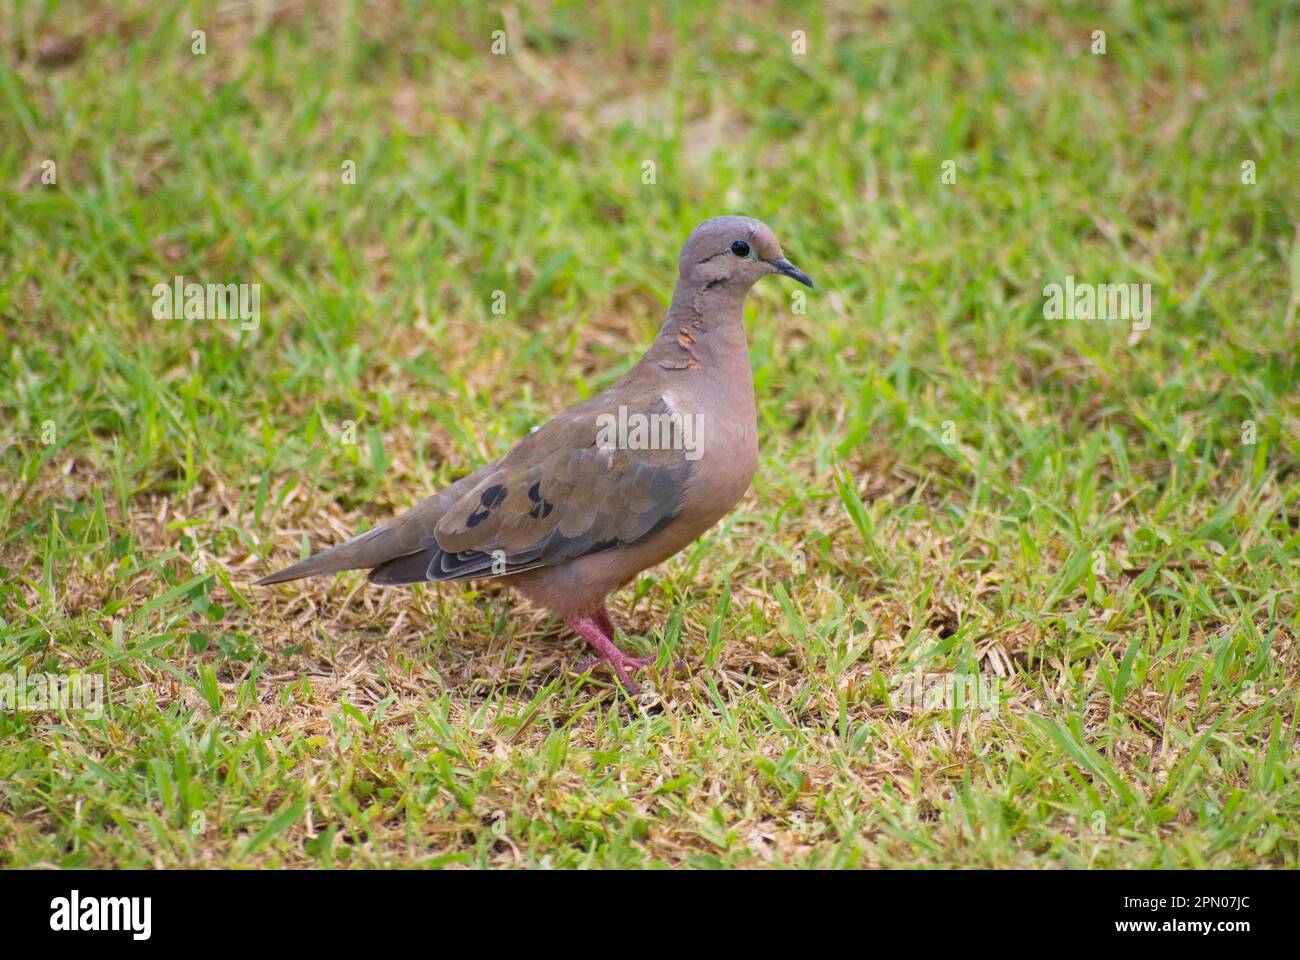 Eared dove (Zenaida auriculata), Eared Doves, Doves, Animals, Birds, Eared Dove adult, standing on grass, Tobago, Trinidad and Tobago Stock Photo